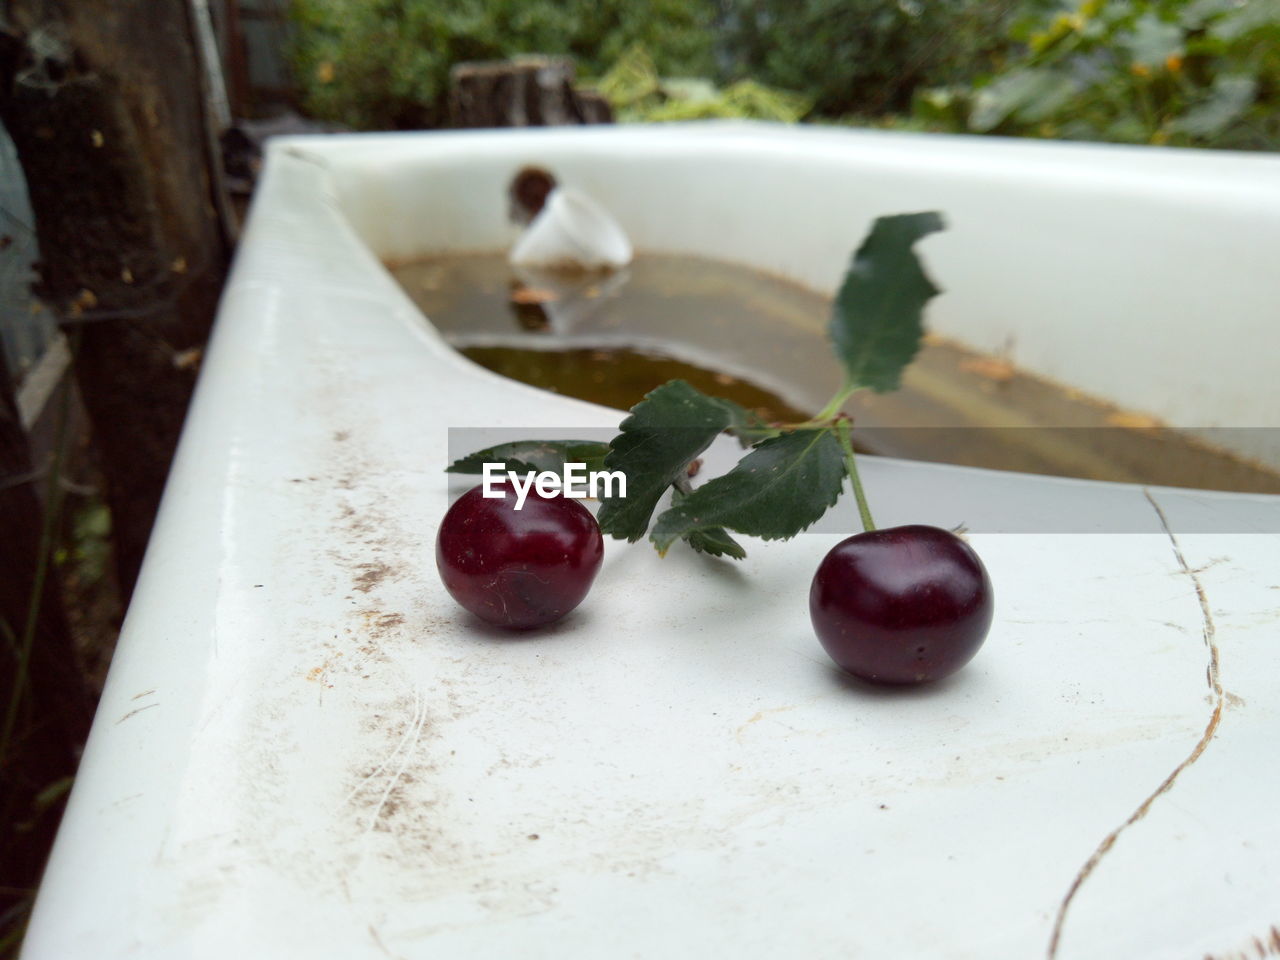 Cherry on an old bath in the garden